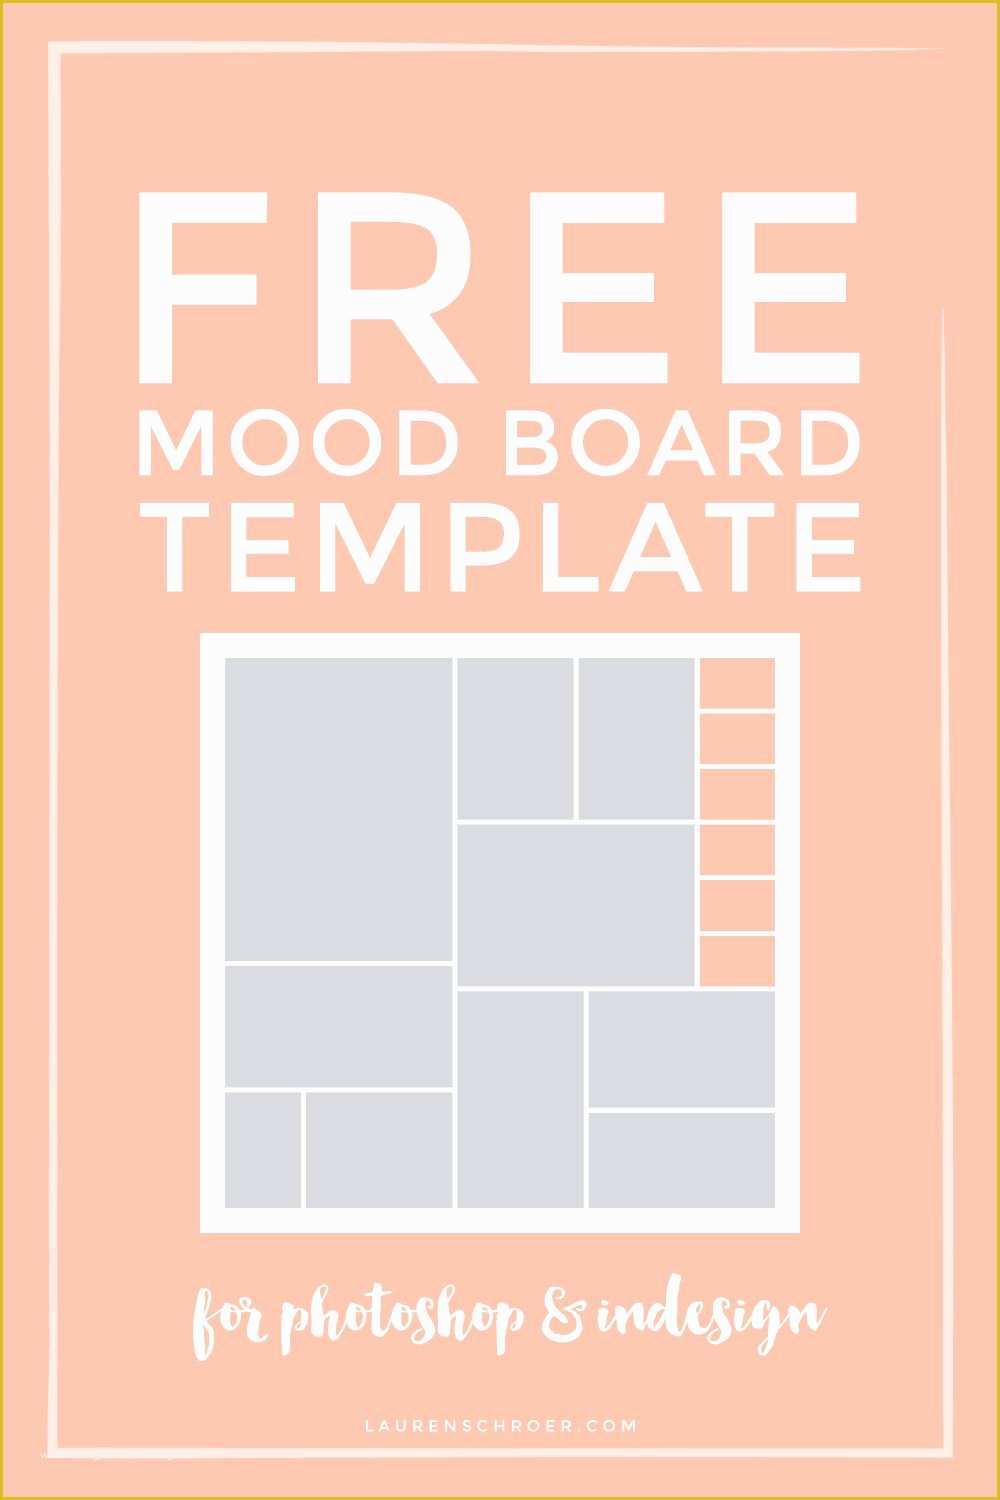 mood board template affinity designer